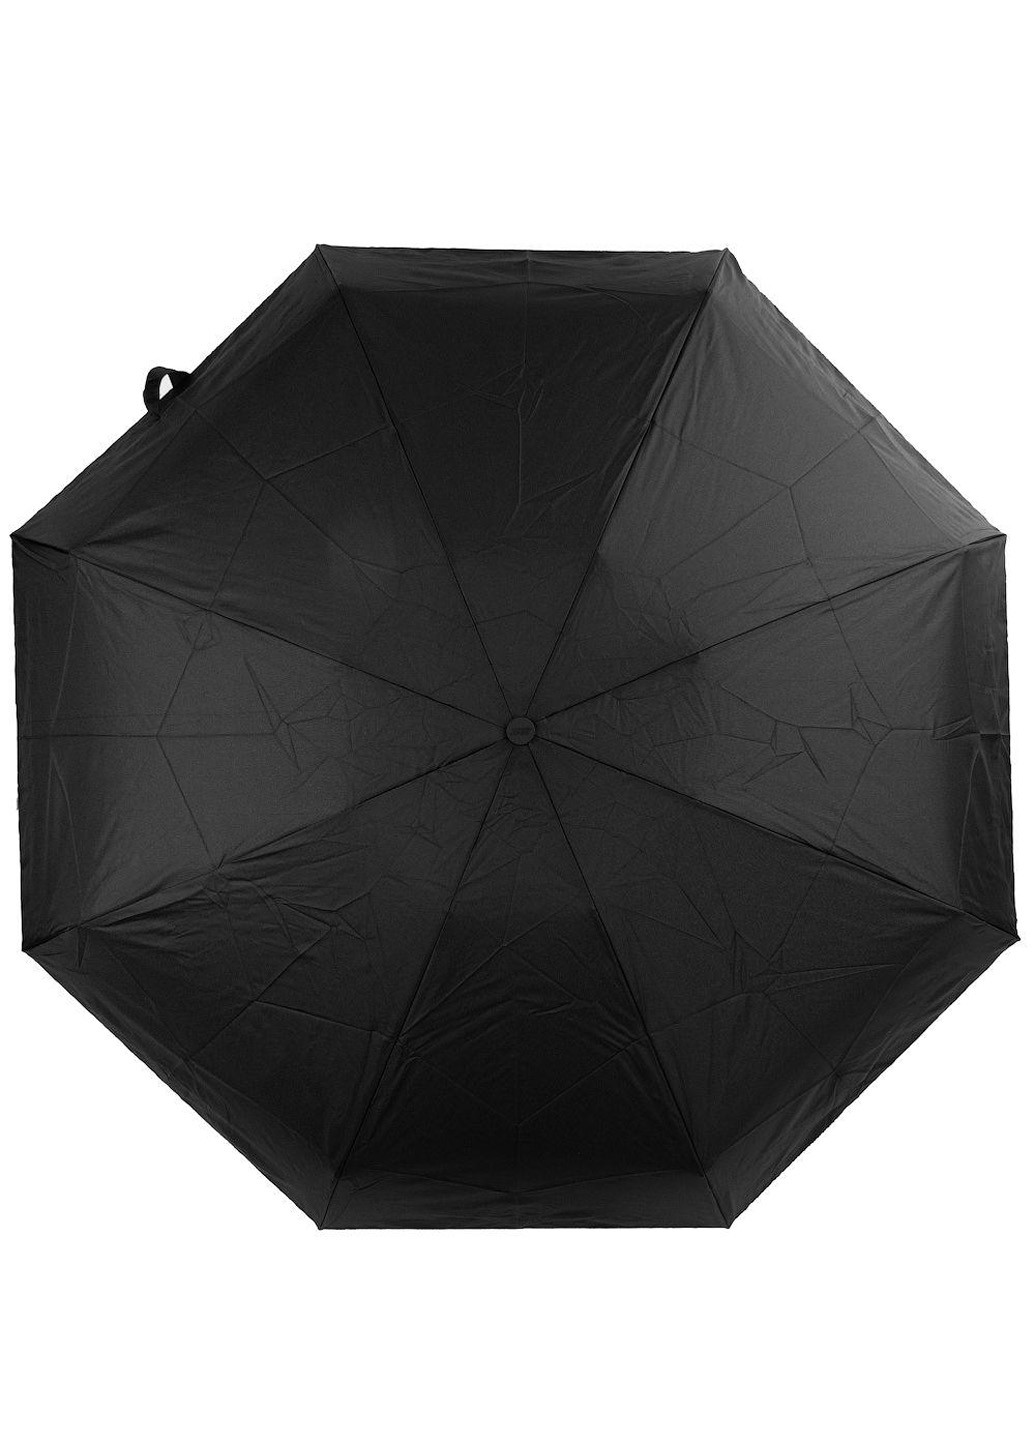 Мужской складной зонт полный автомат 96 см Zest (205132442)